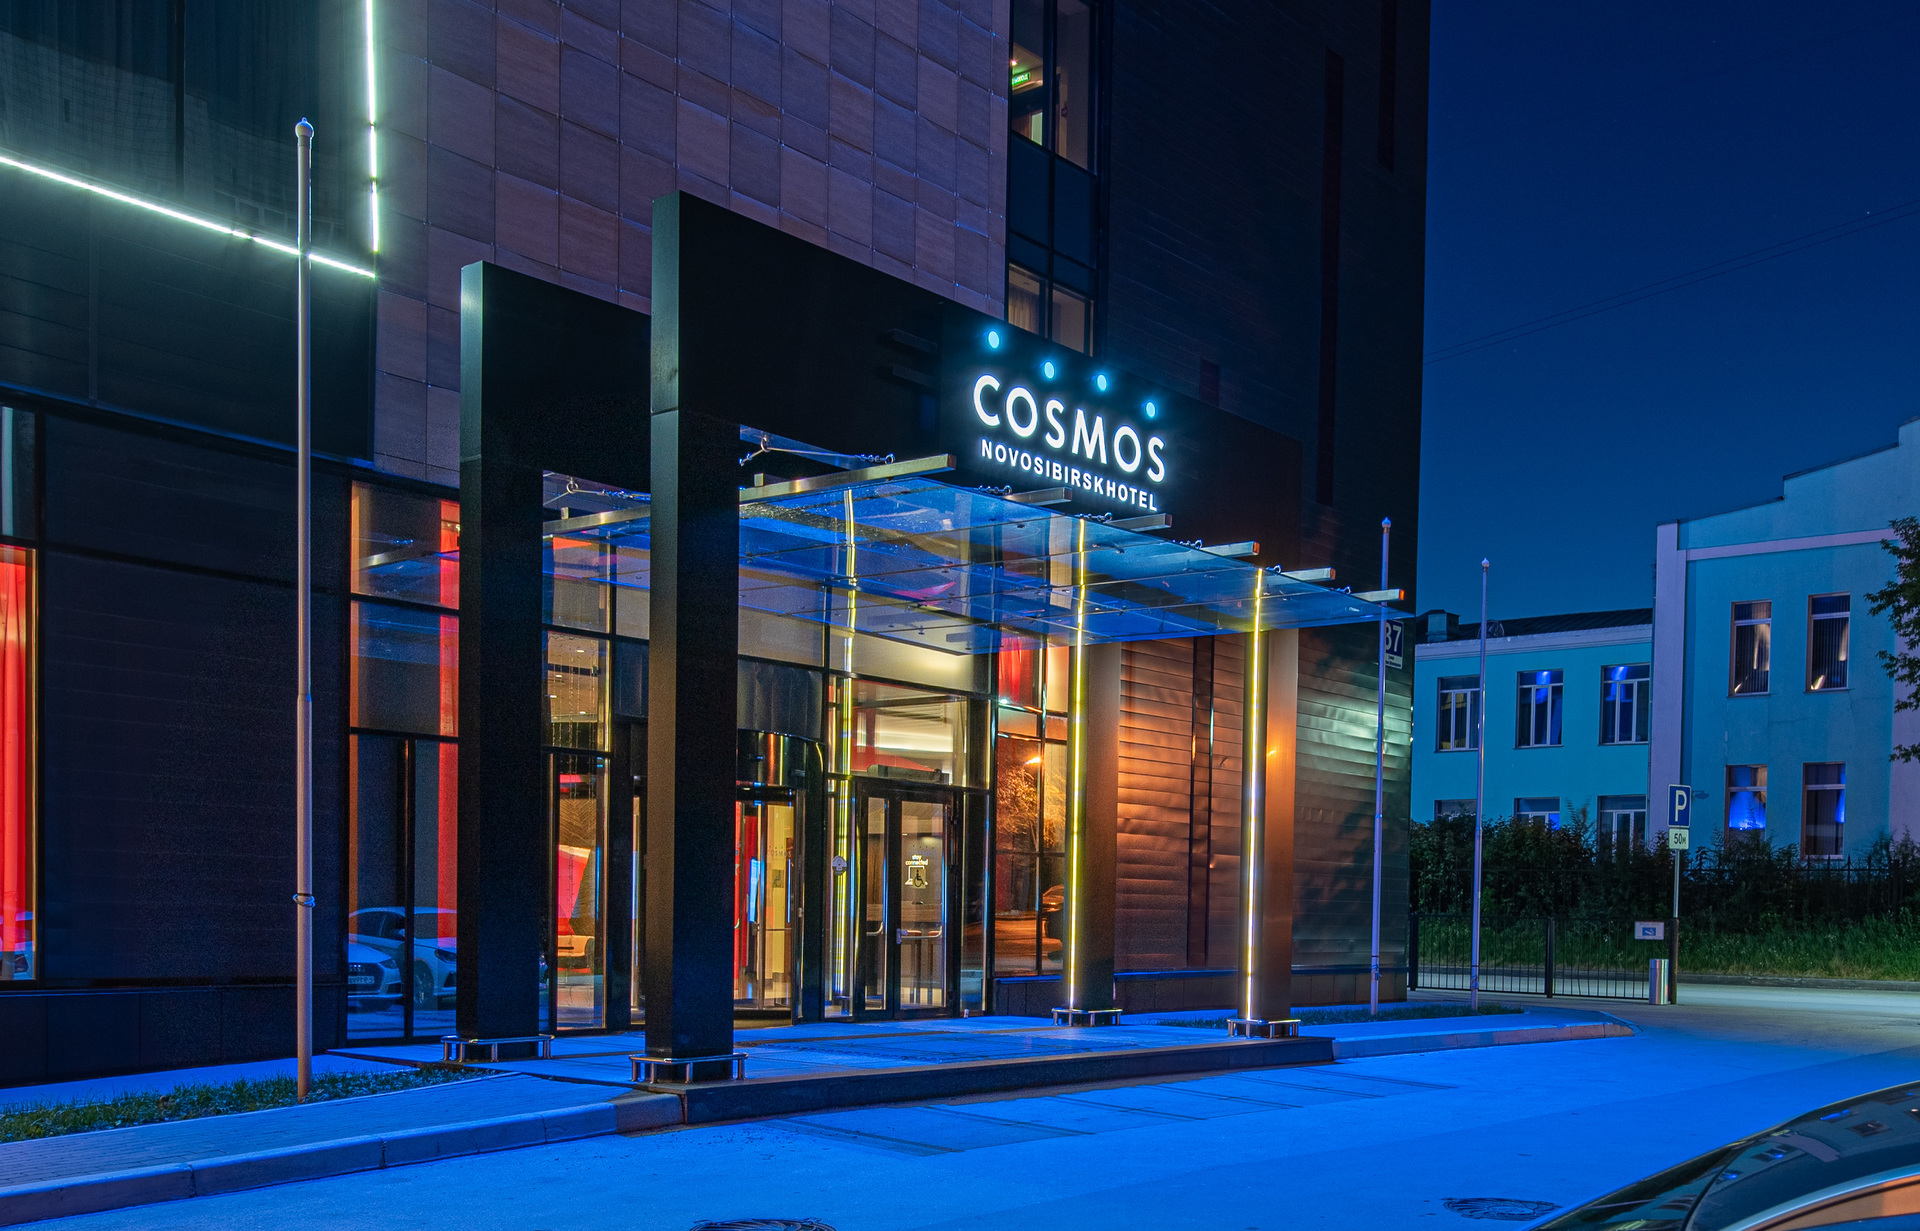 Cosmos Novosibirsk Hotel - Забронировать отель | Гостиница в Новосибирске  Cosmos